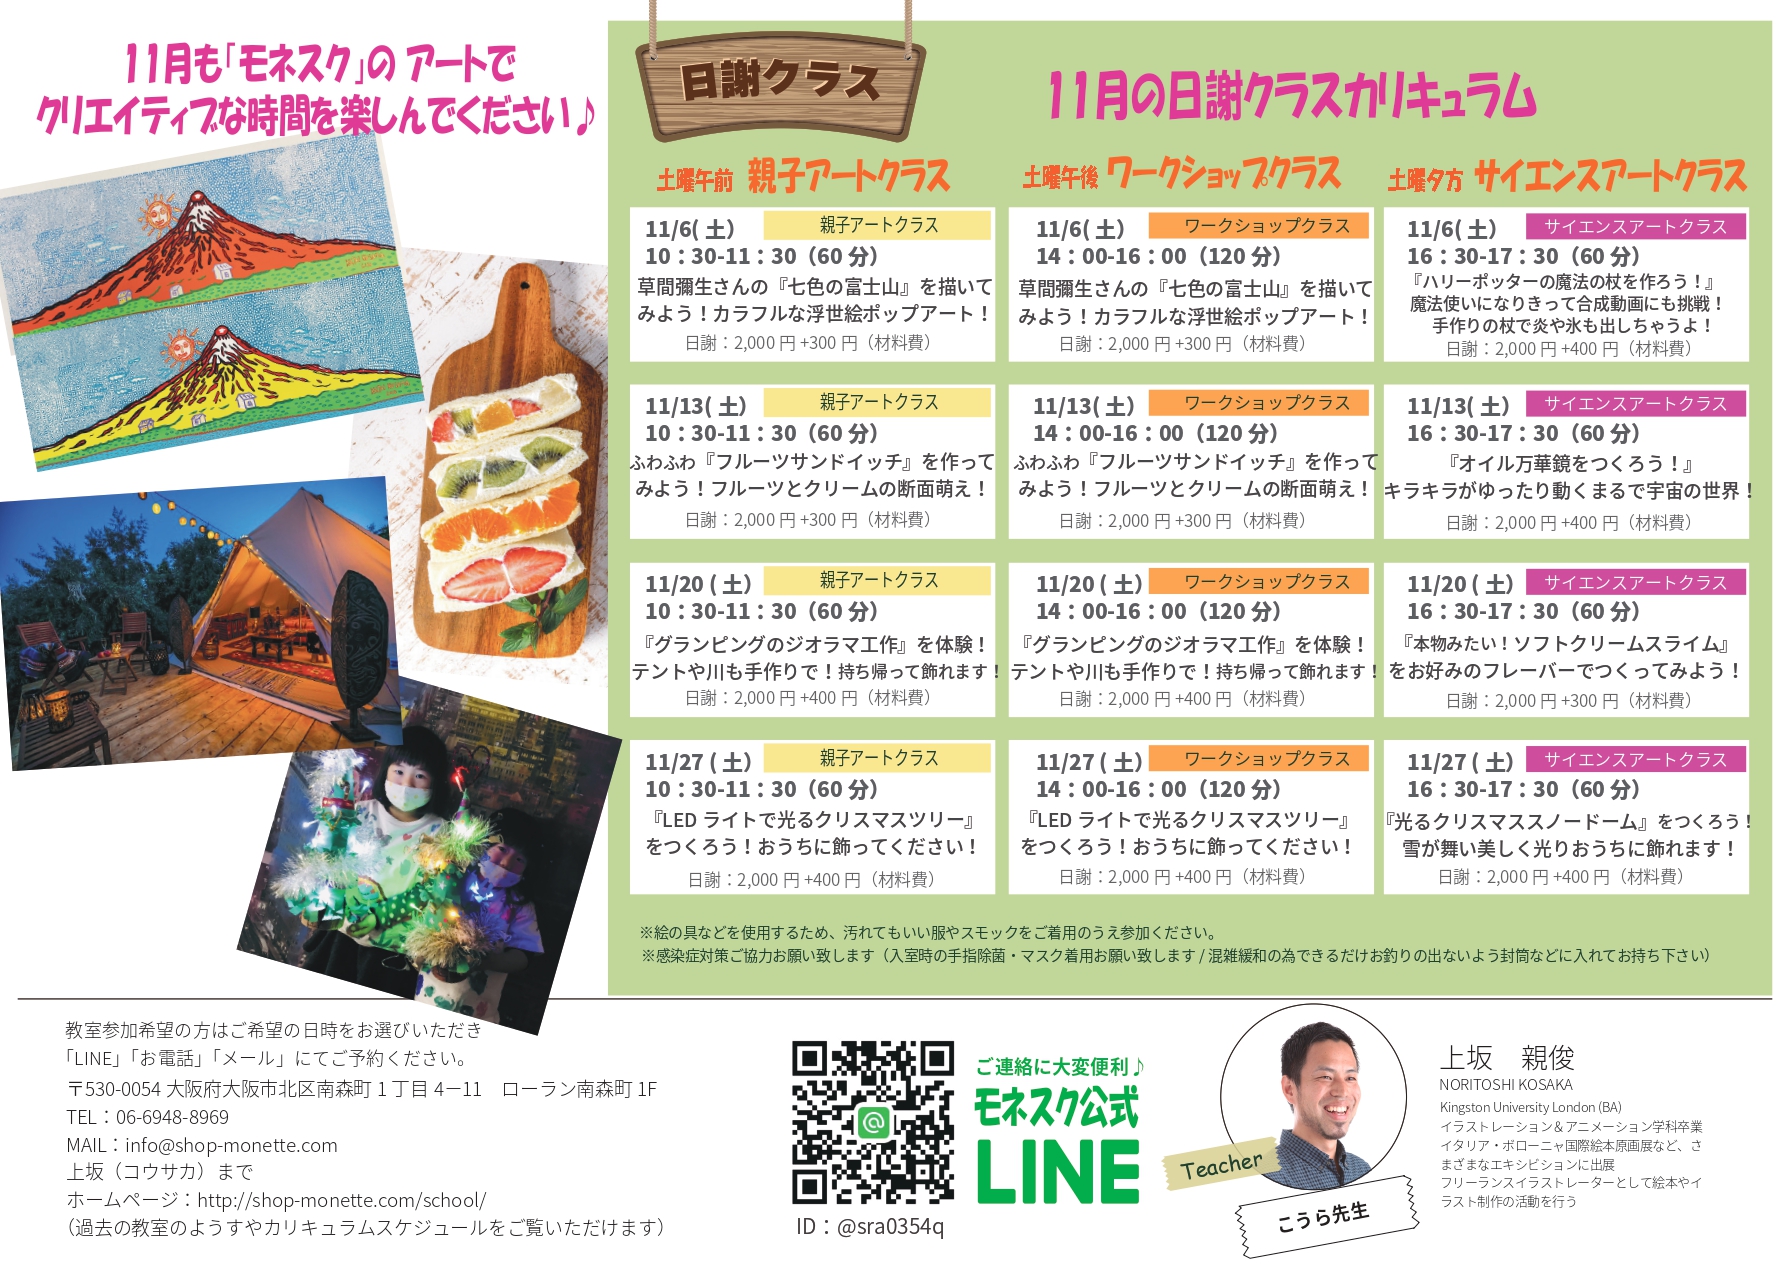 ツリーハウスの工作 に挑戦 子供でも簡単な作り方 大阪のアートスクールモネスク